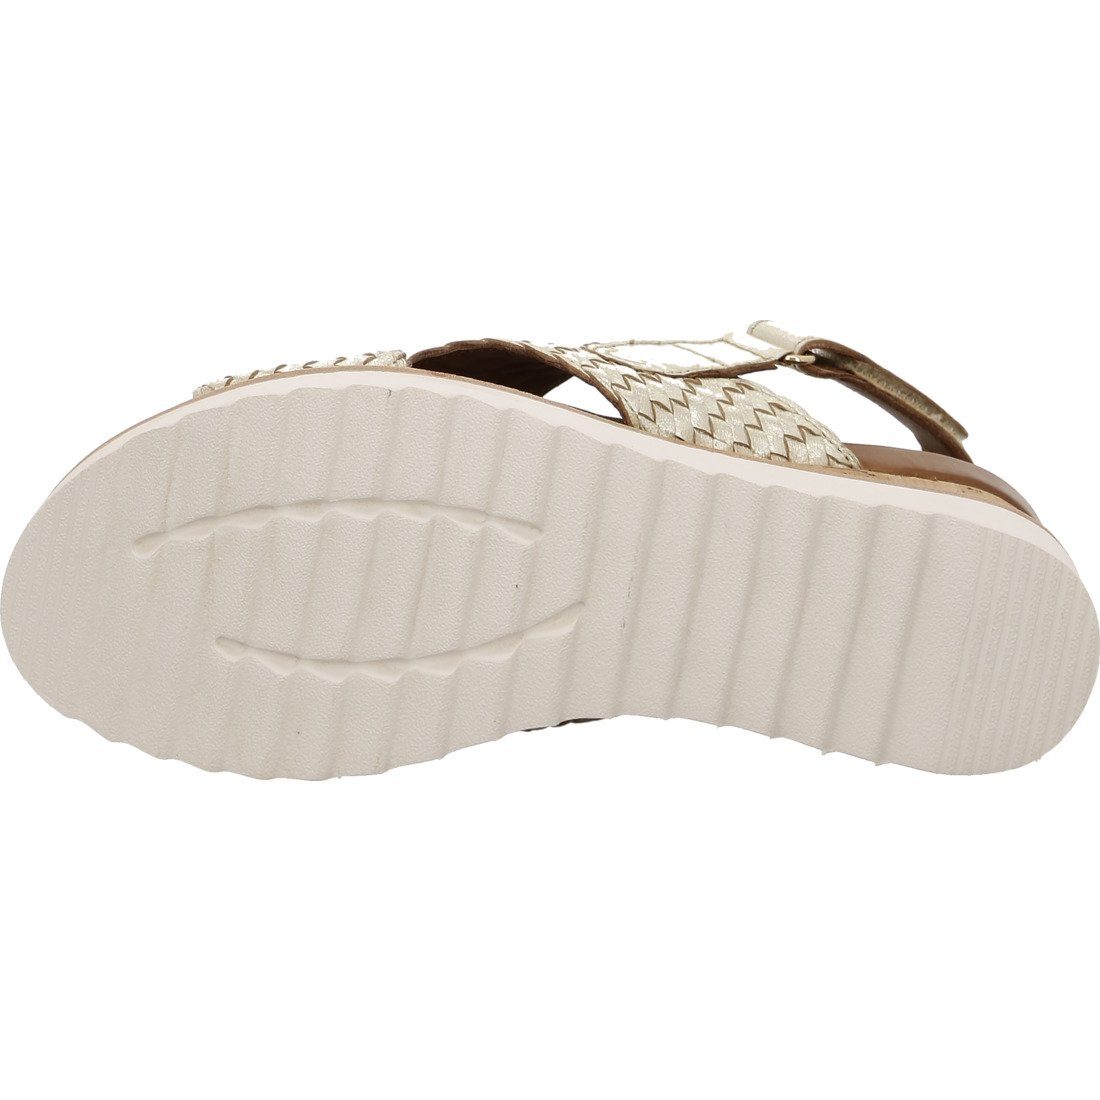 Ara Ara Schuhe, beige Leder 048037 Sandalette Damen - Sandalette Valencia